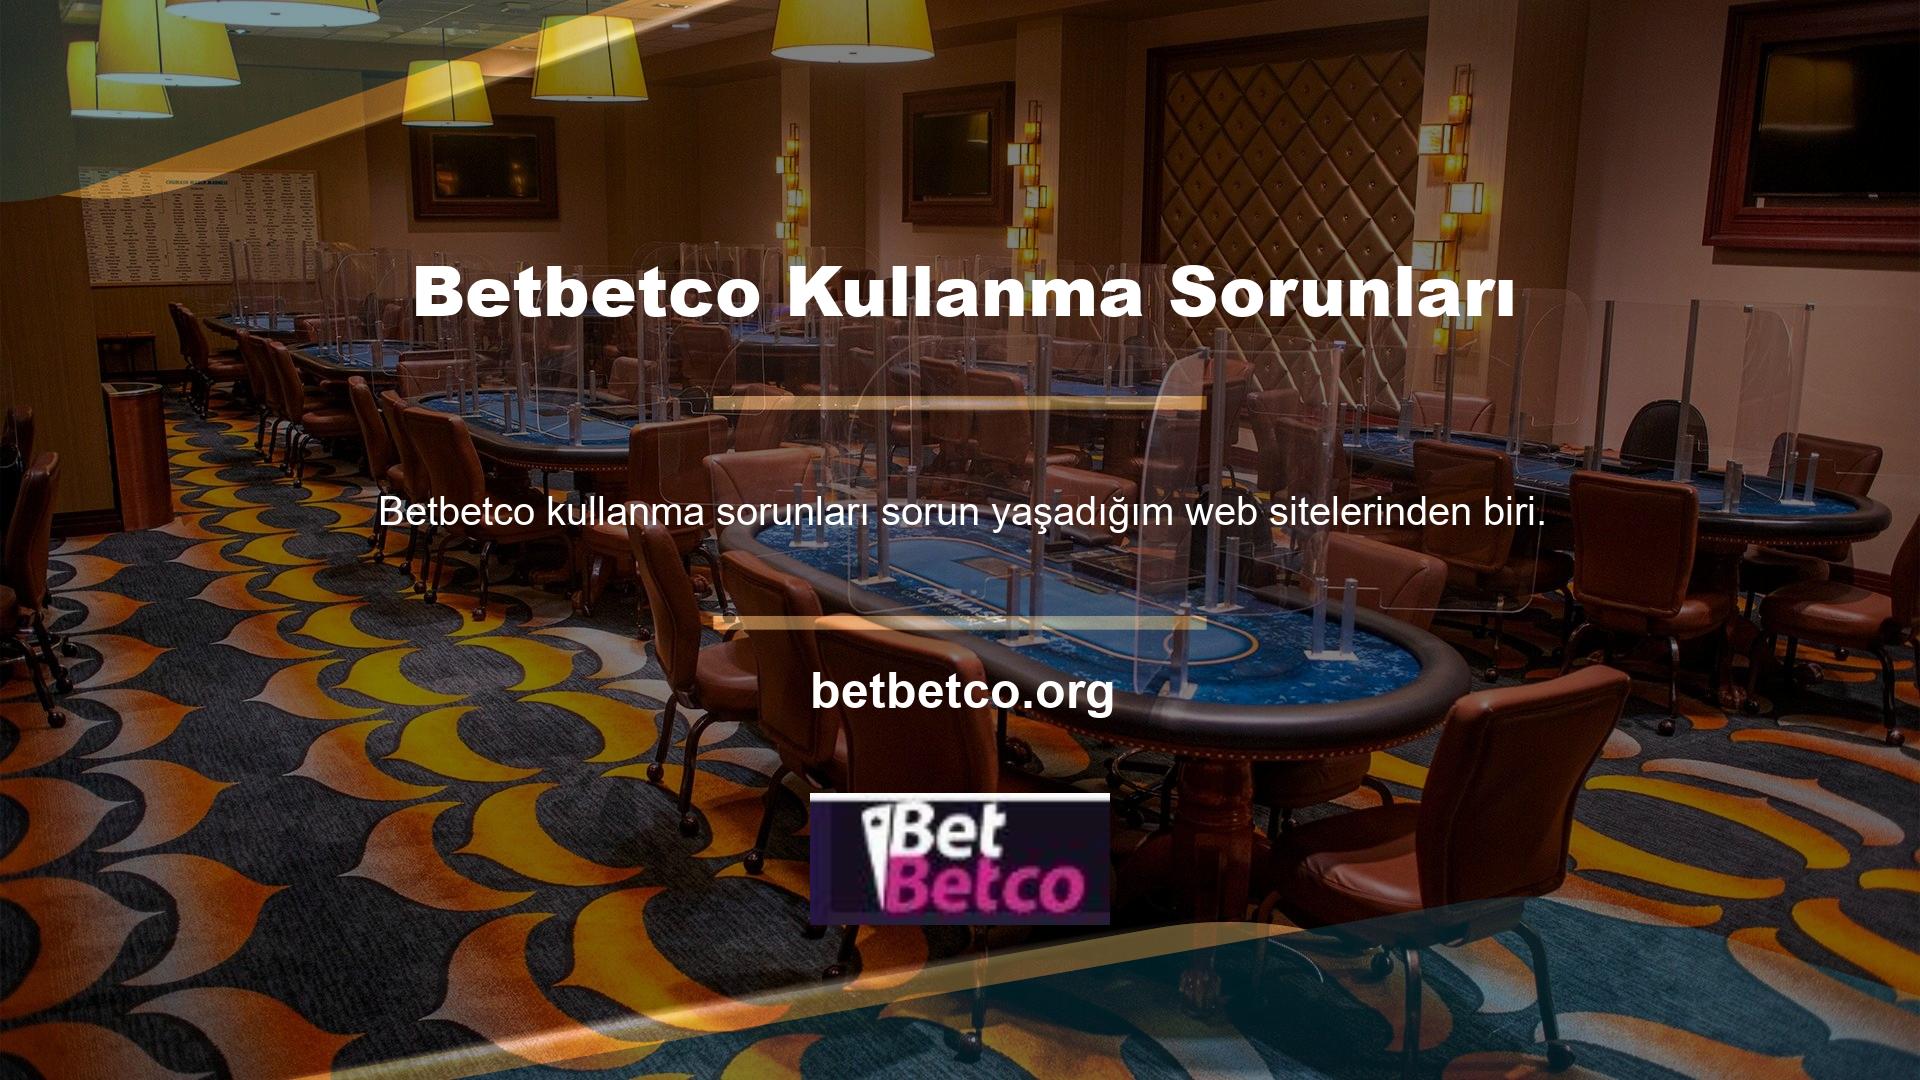 Ancak Betbetco web sitesine erişim kısıtlamaları gelince yetkililer kişilere çeşitli cezalar vermeye devam etti